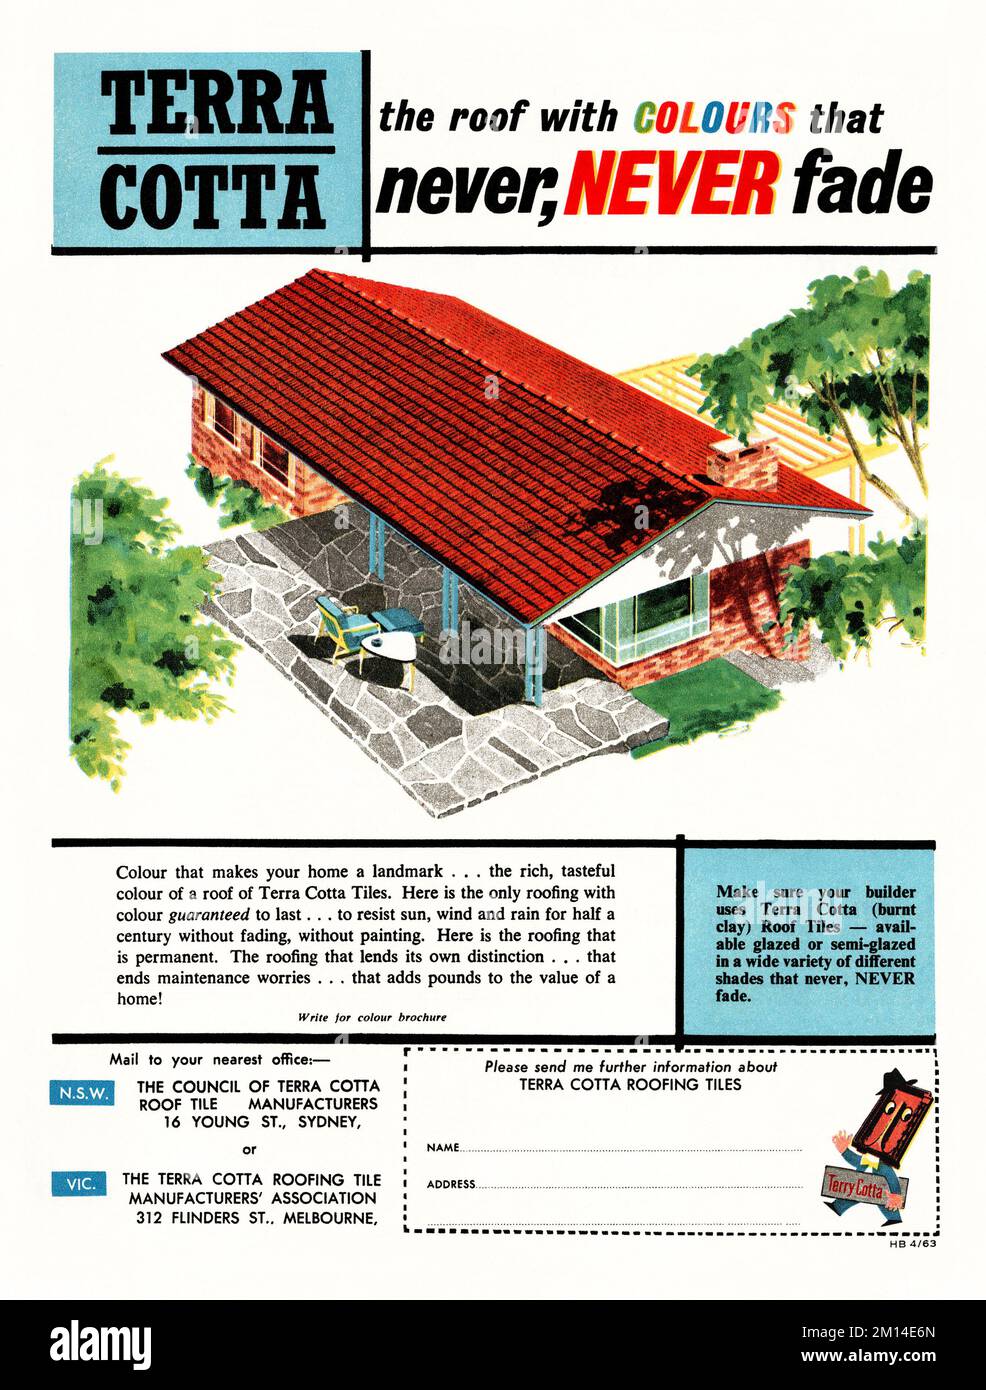 Une publicité de 1960s pour une toiture en tuiles Terra Cotta – elle est apparue dans un magazine australien en 1963. L'illustration montre une maison moderne avec un toit rouge vif. La publicité indique que la couleur des carreaux d'argile brûlée ne s'estompe jamais. La publicité présente un personnage de dessin animé nommé ‘Terry Cotta’ – des graphiques millésimés de dix-neuf années soixante à des fins éditoriales. Banque D'Images